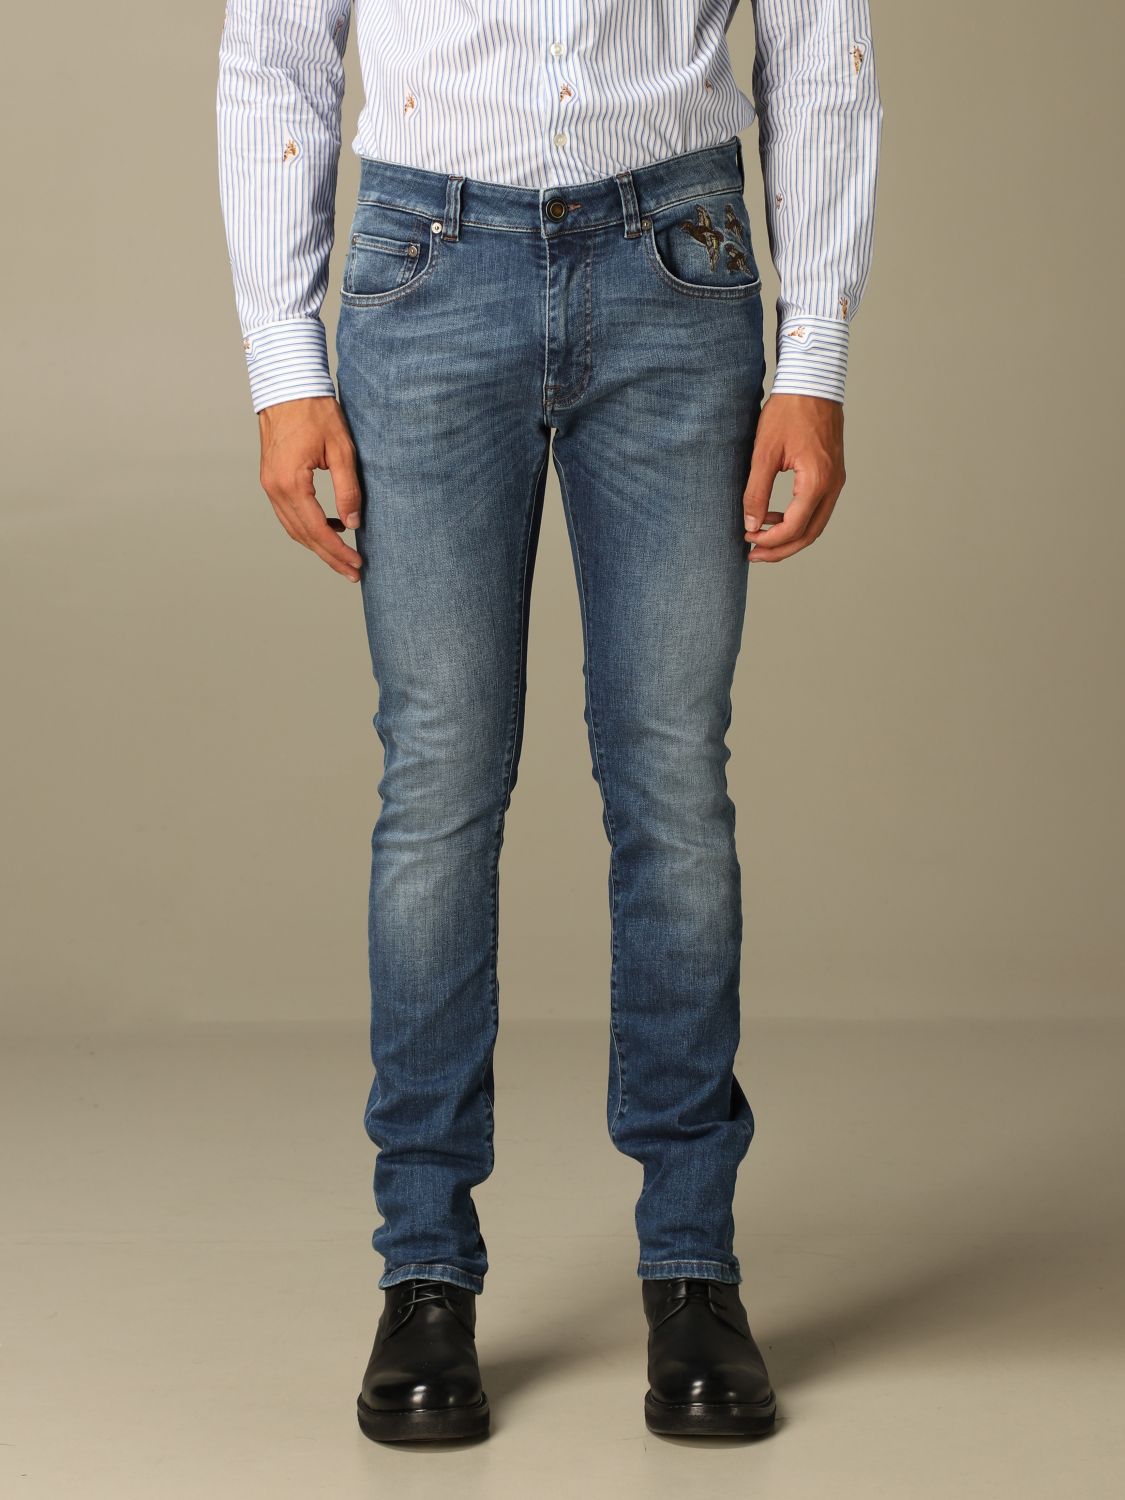 etro jeans price